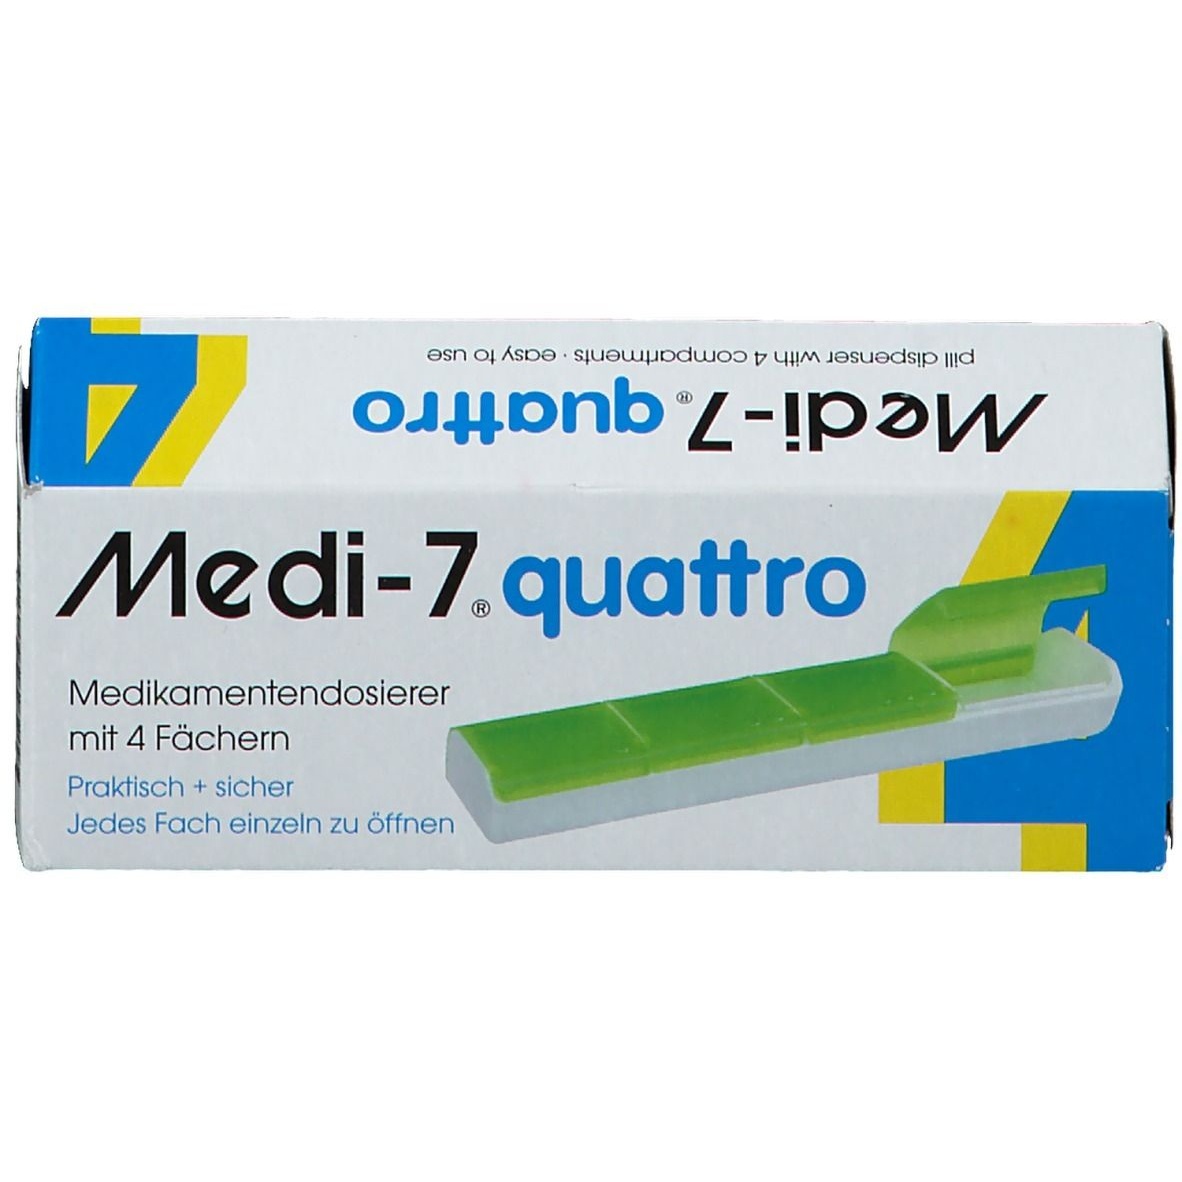 medi- 7 medikamentendosierer